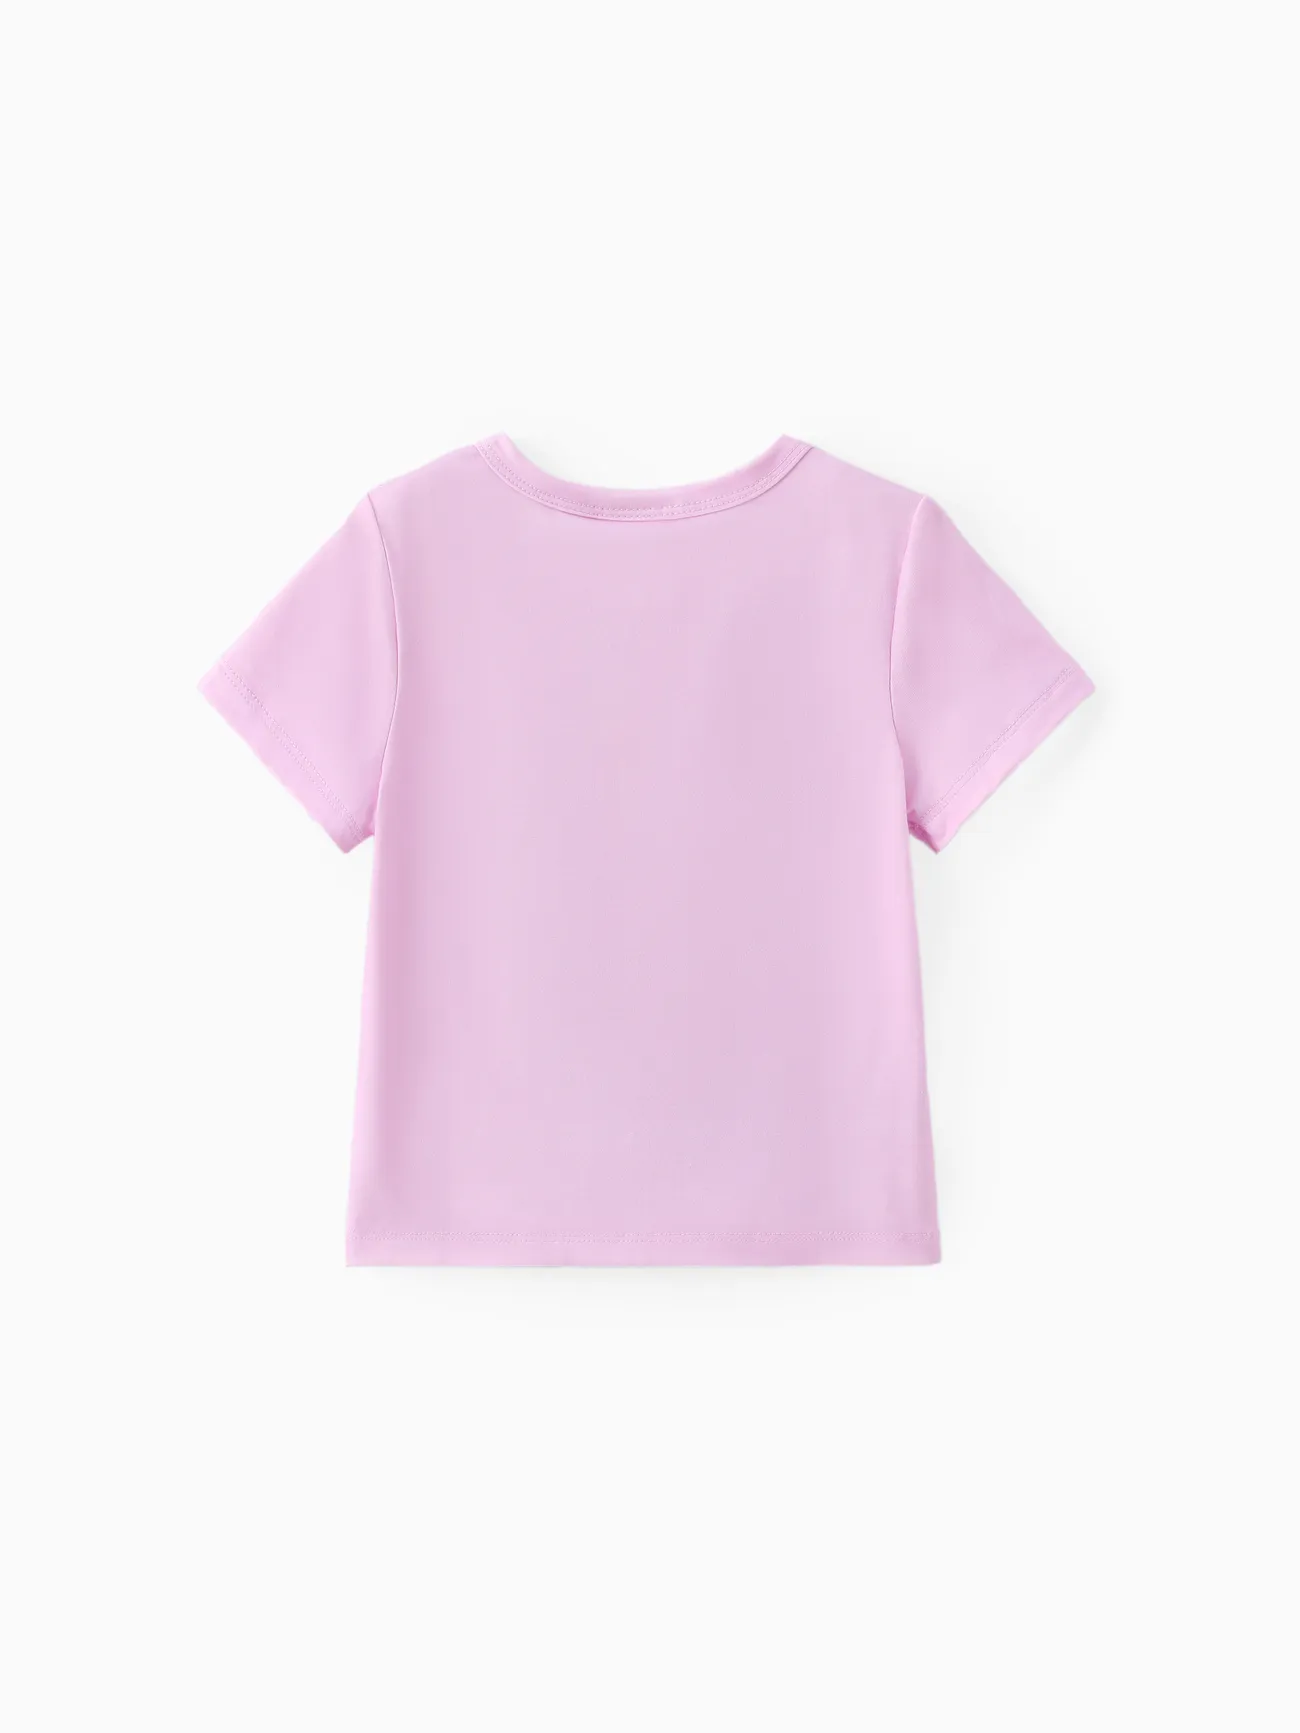 La Pat’ Patrouille Unisexe Enfantin T-Shirt Violet Clair big image 1